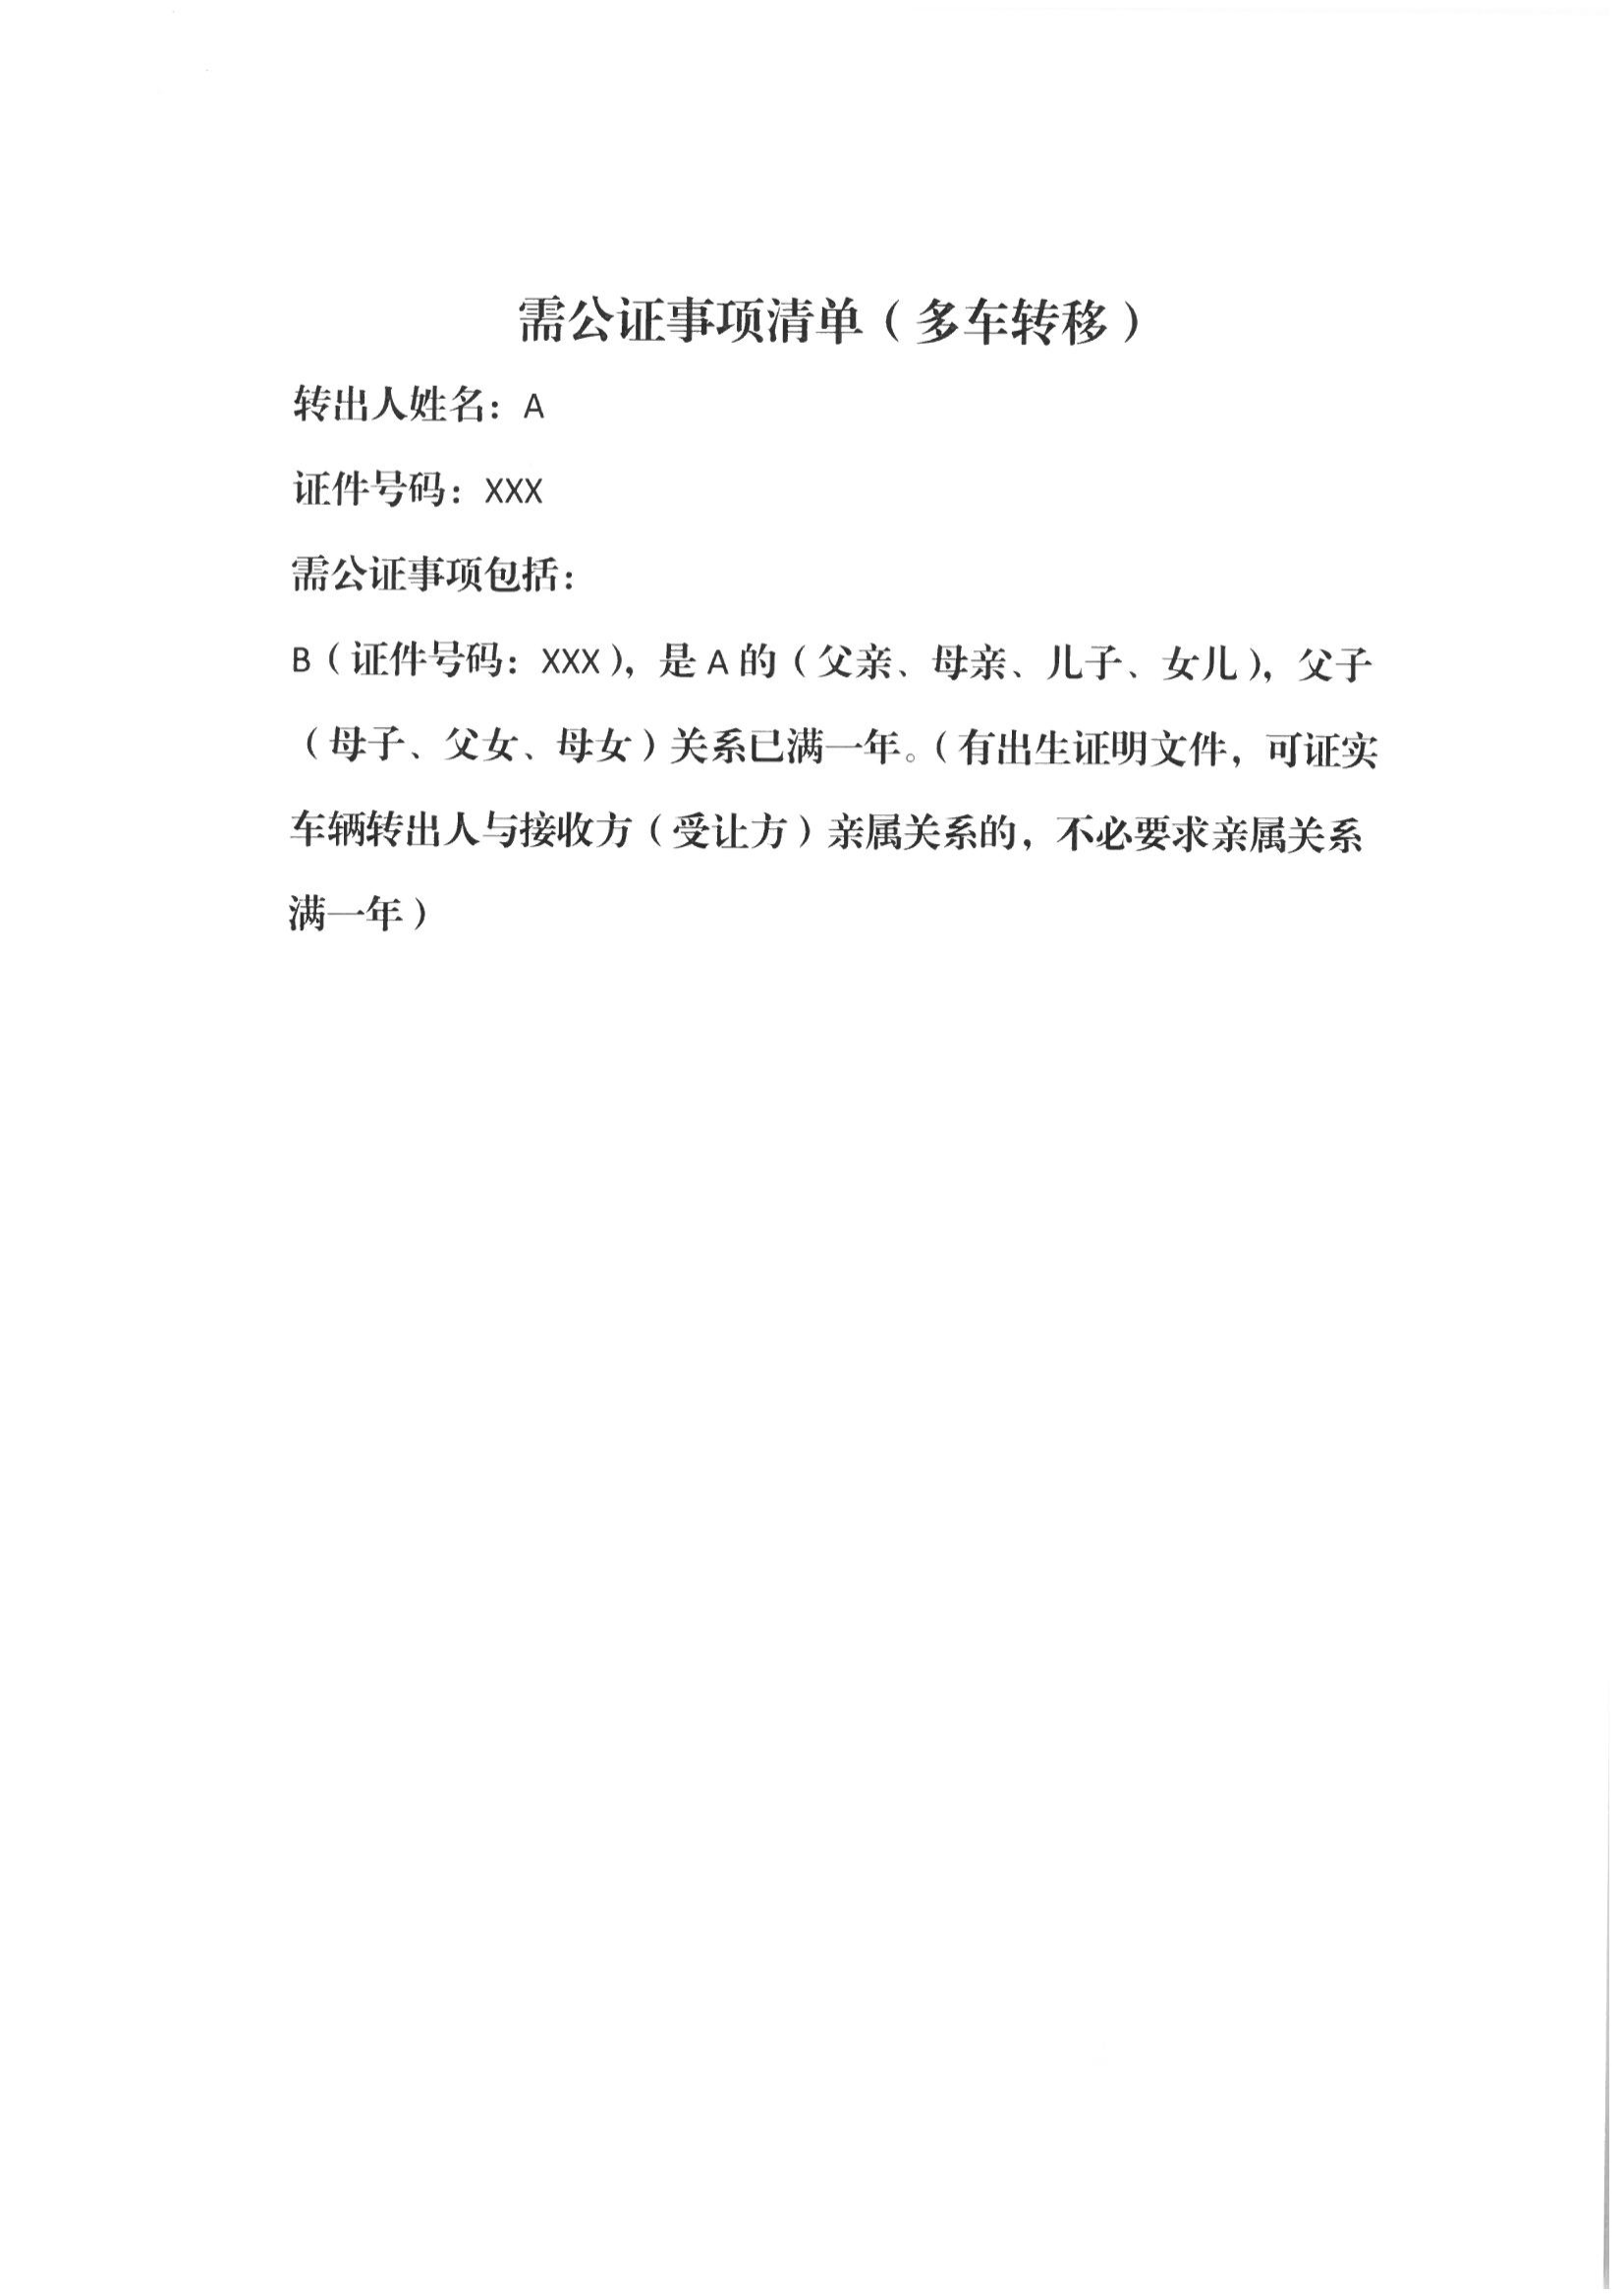 京公协字【2021】21号 北京市公证协会规范执业指引【第13号】_50